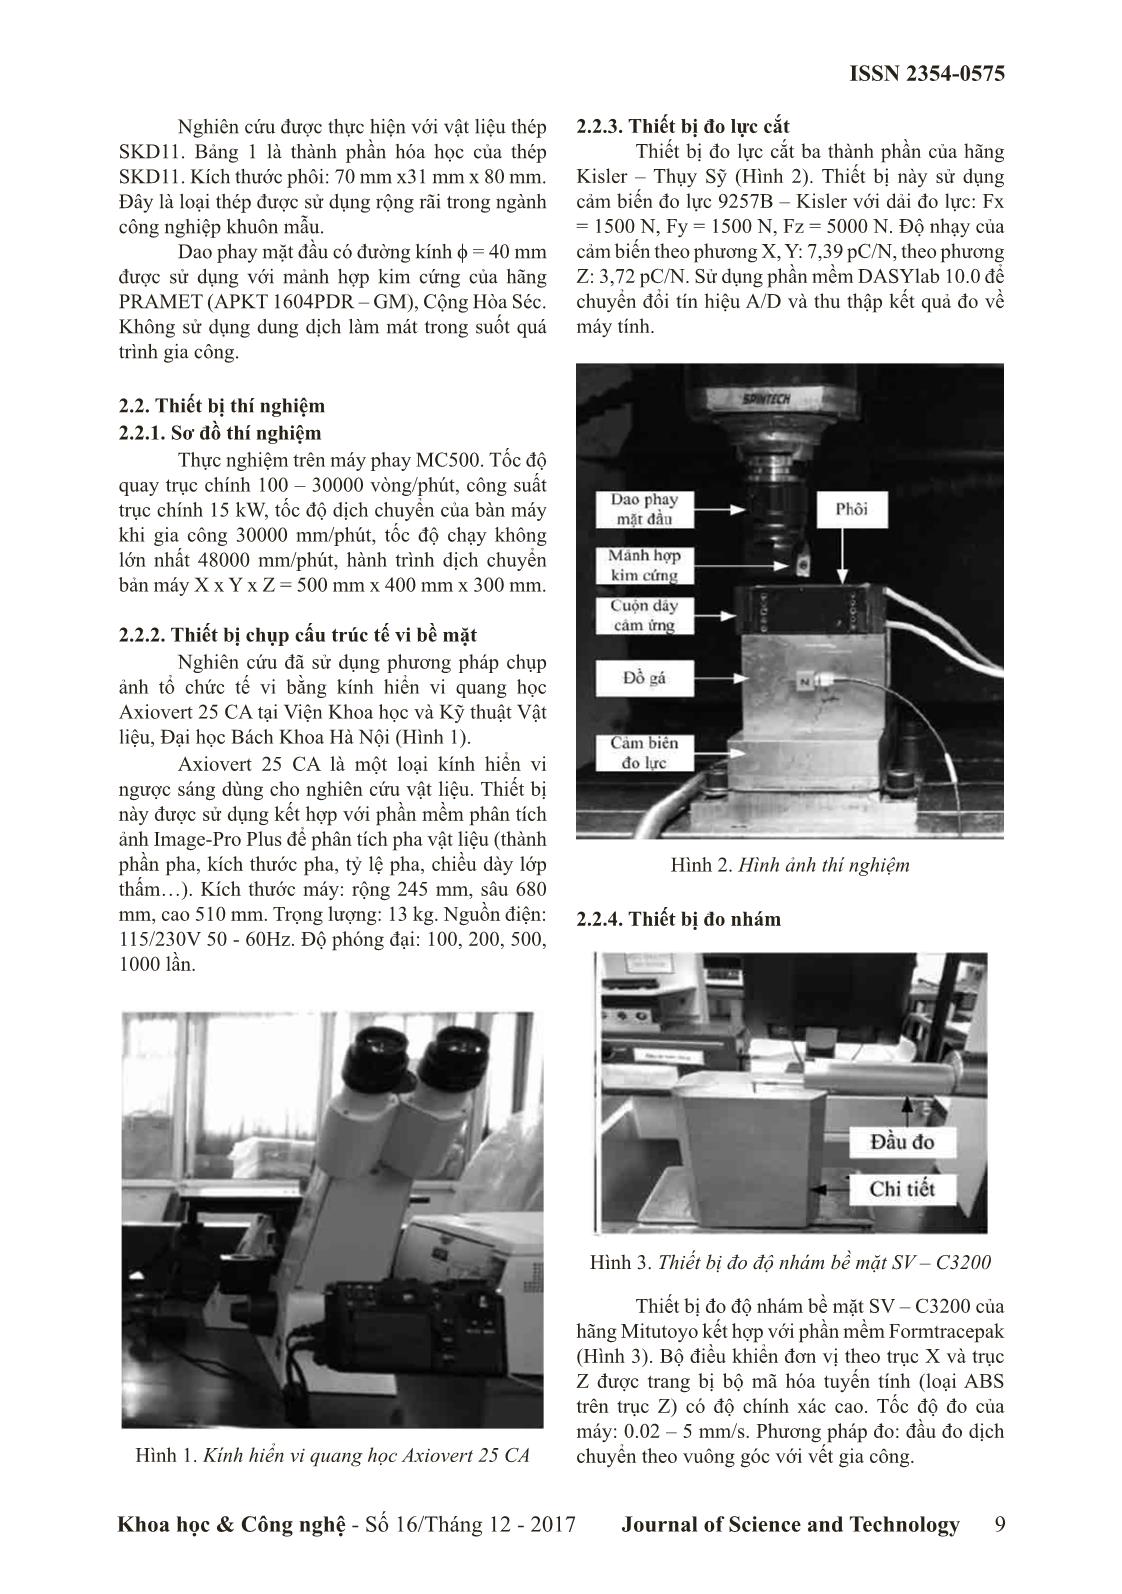 Nghiên cứu ảnh hưởng của quá trình gia nhiệt đến lực cắt và nhám bề mặt khi phay thép SKD11 trang 2